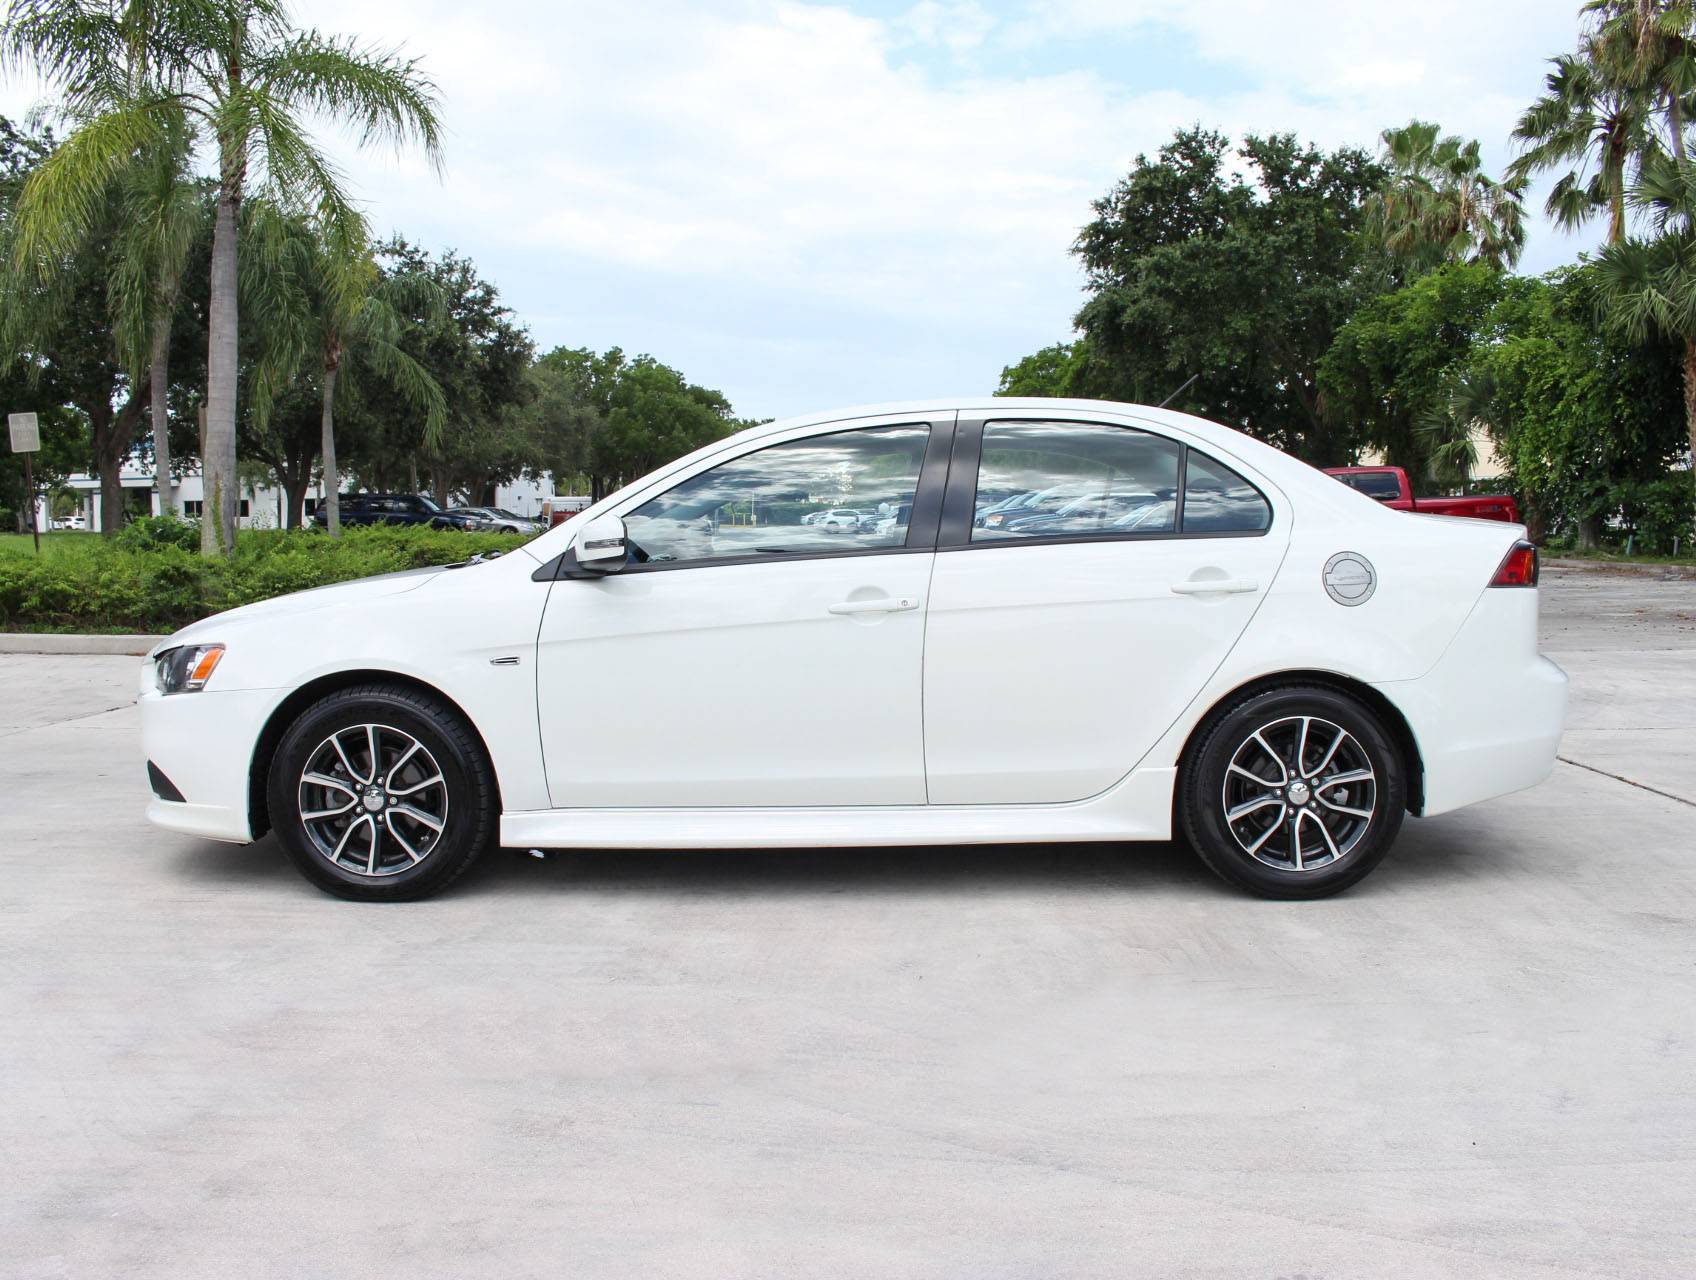 Florida Fine Cars - Used MITSUBISHI LANCER 2015 MARGATE Se Awd